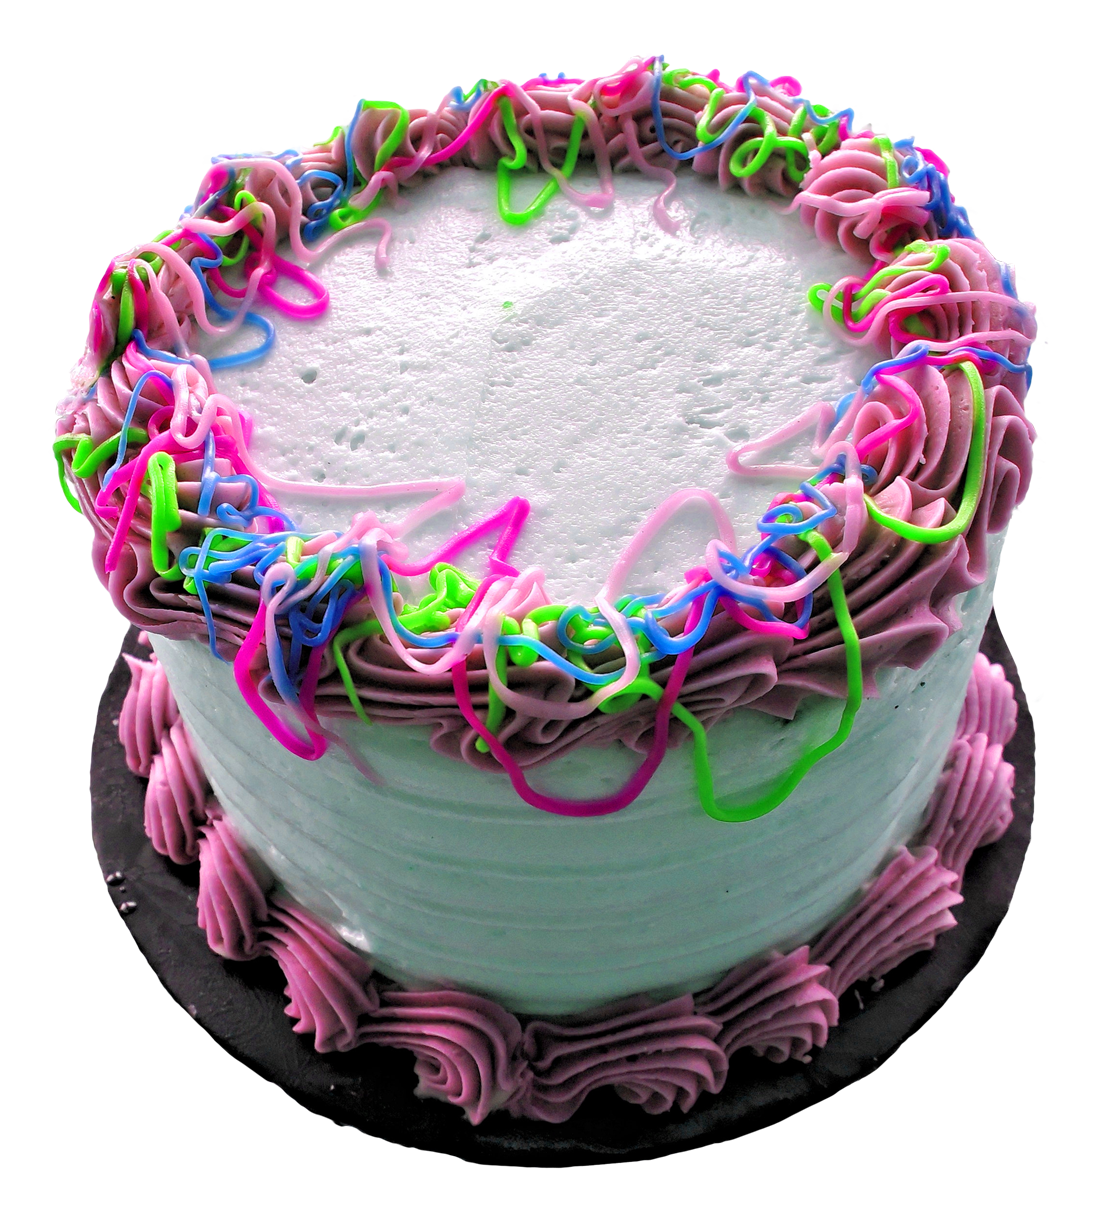 Cake PNG Image